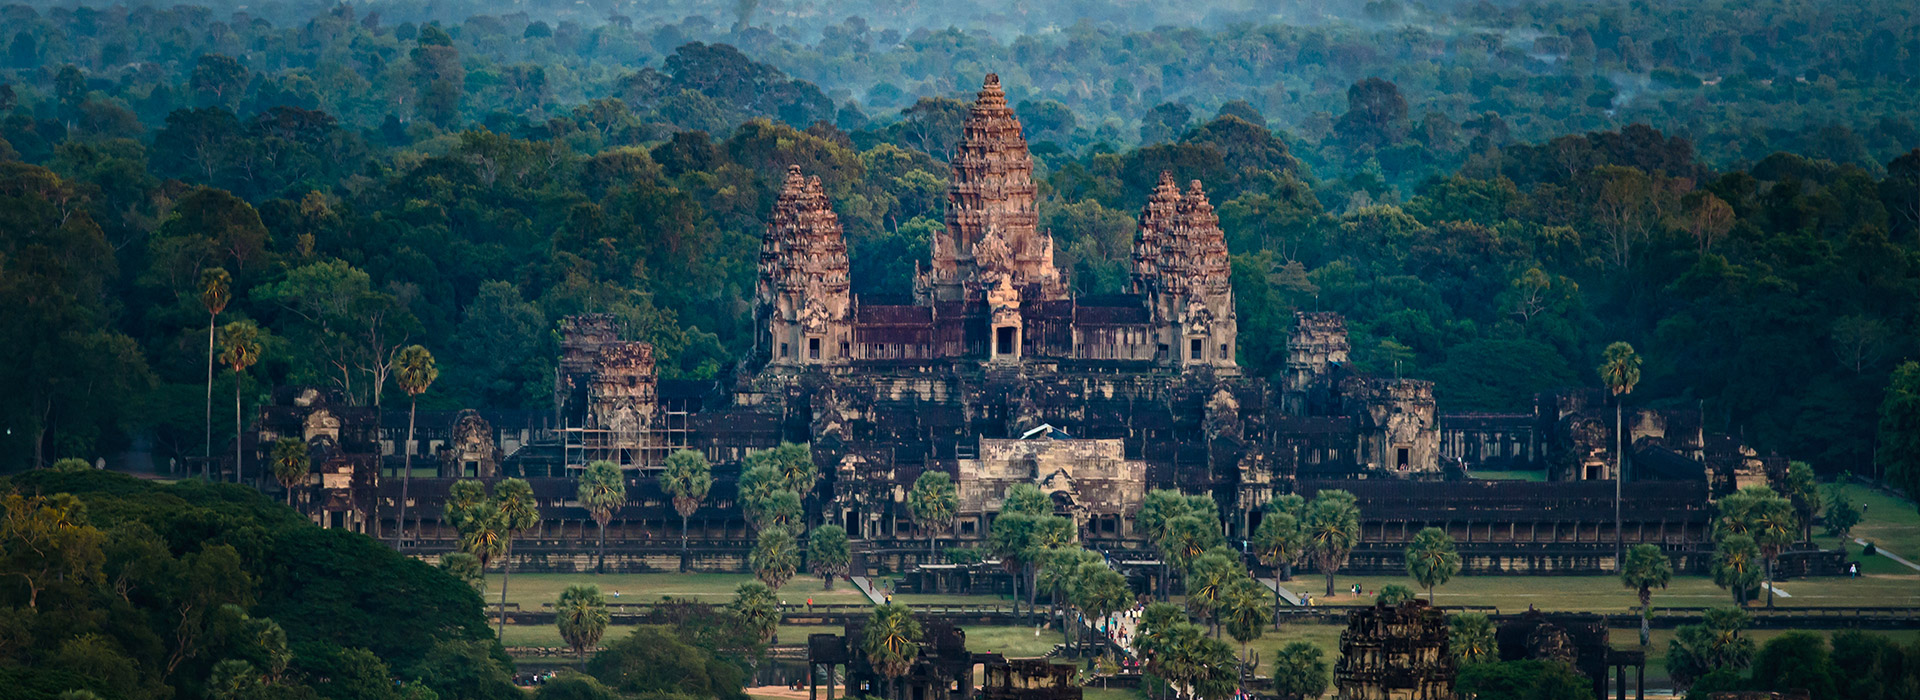 Reisen nach Kambodscha - Individuelle Reisen nach Kambodscha - Harry Kolb AG - Tourismus